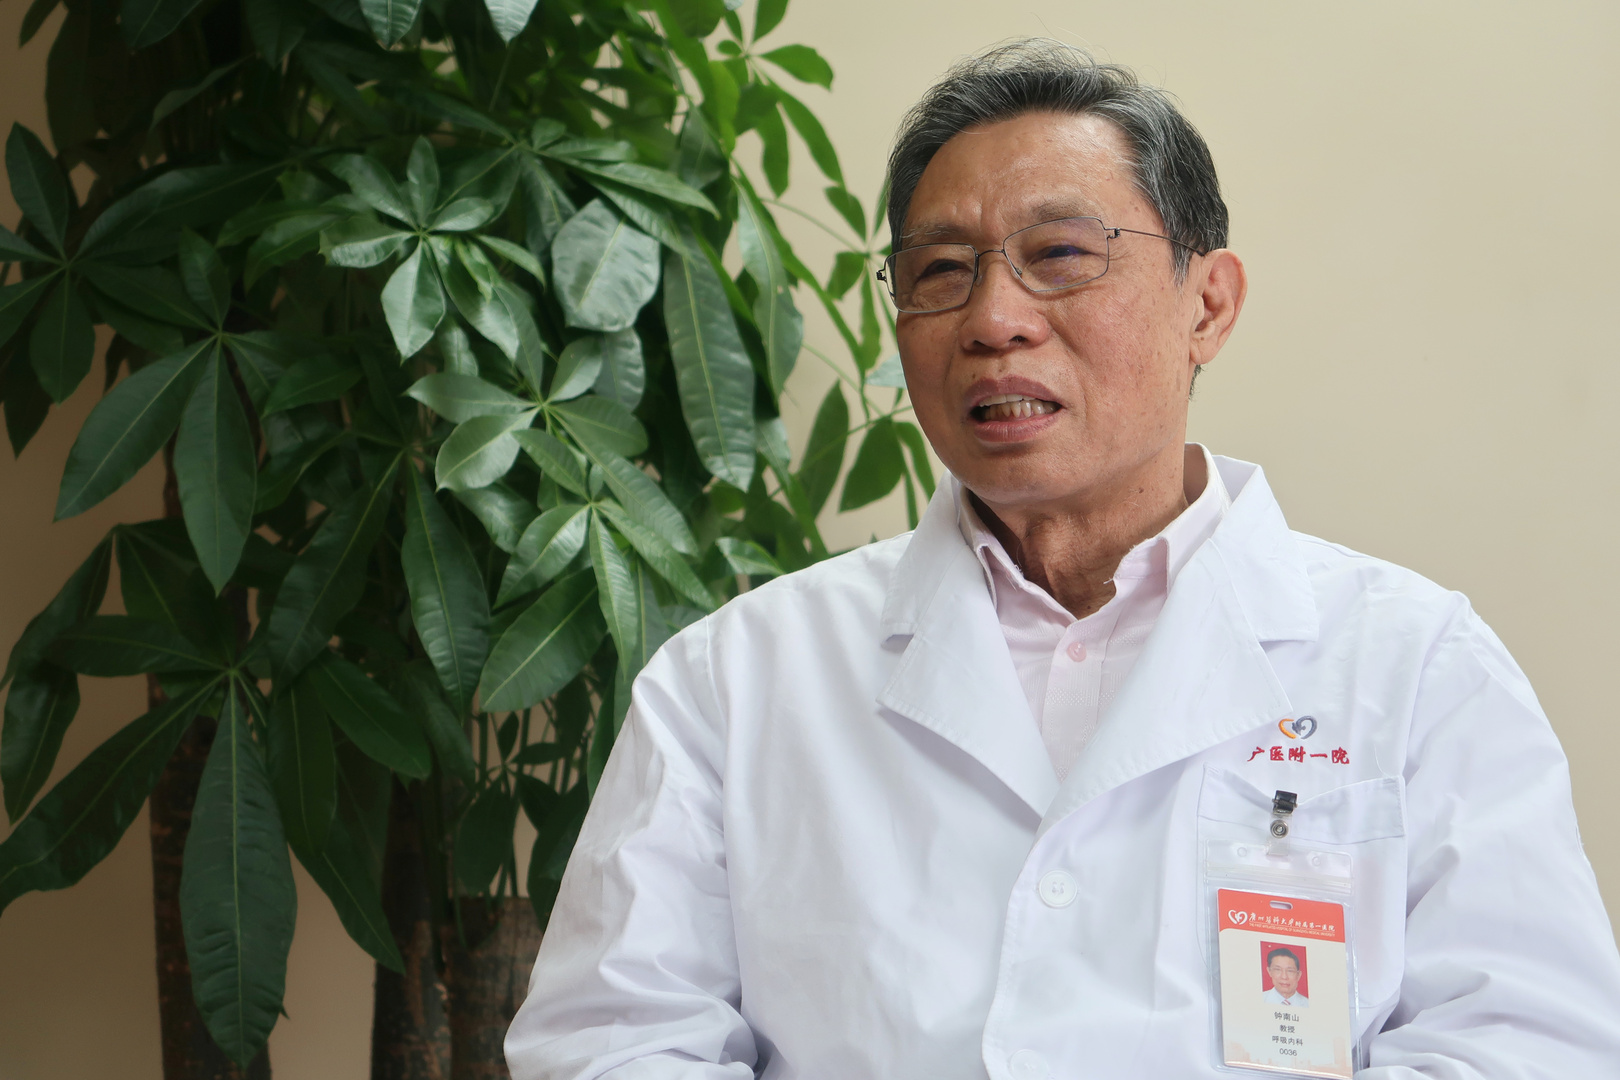 مستشار الحكومة الصينية: سلطات ووهان سعت لإخفاء الحقيقية حول تفشي فيروس كورونا